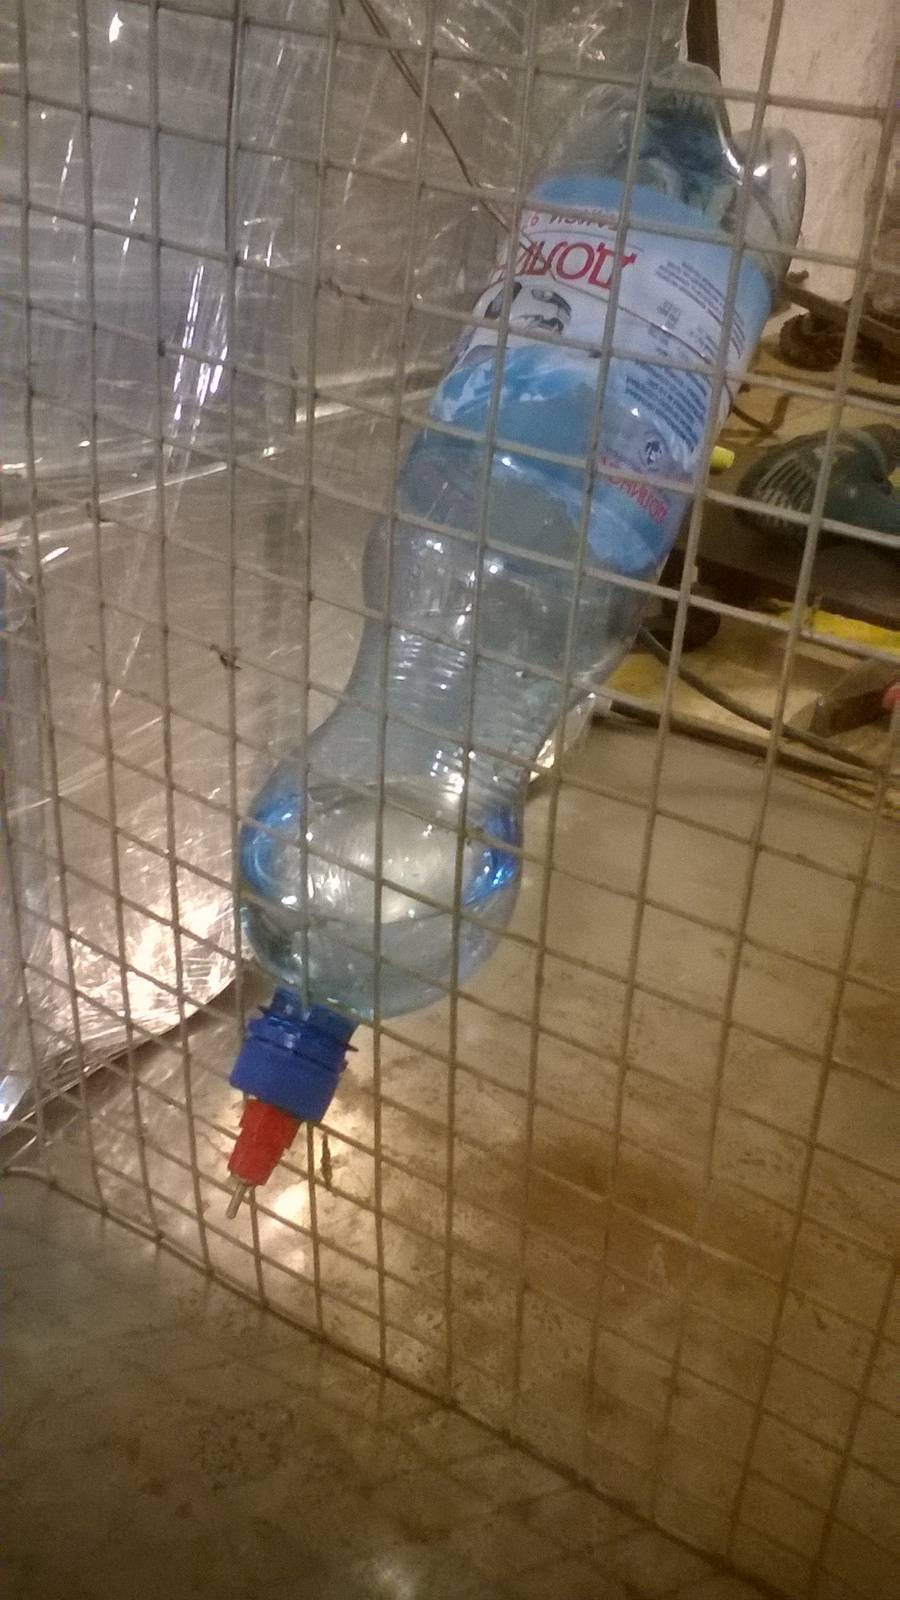 Как сделать поилки для кроликов из пластиковых бутылок